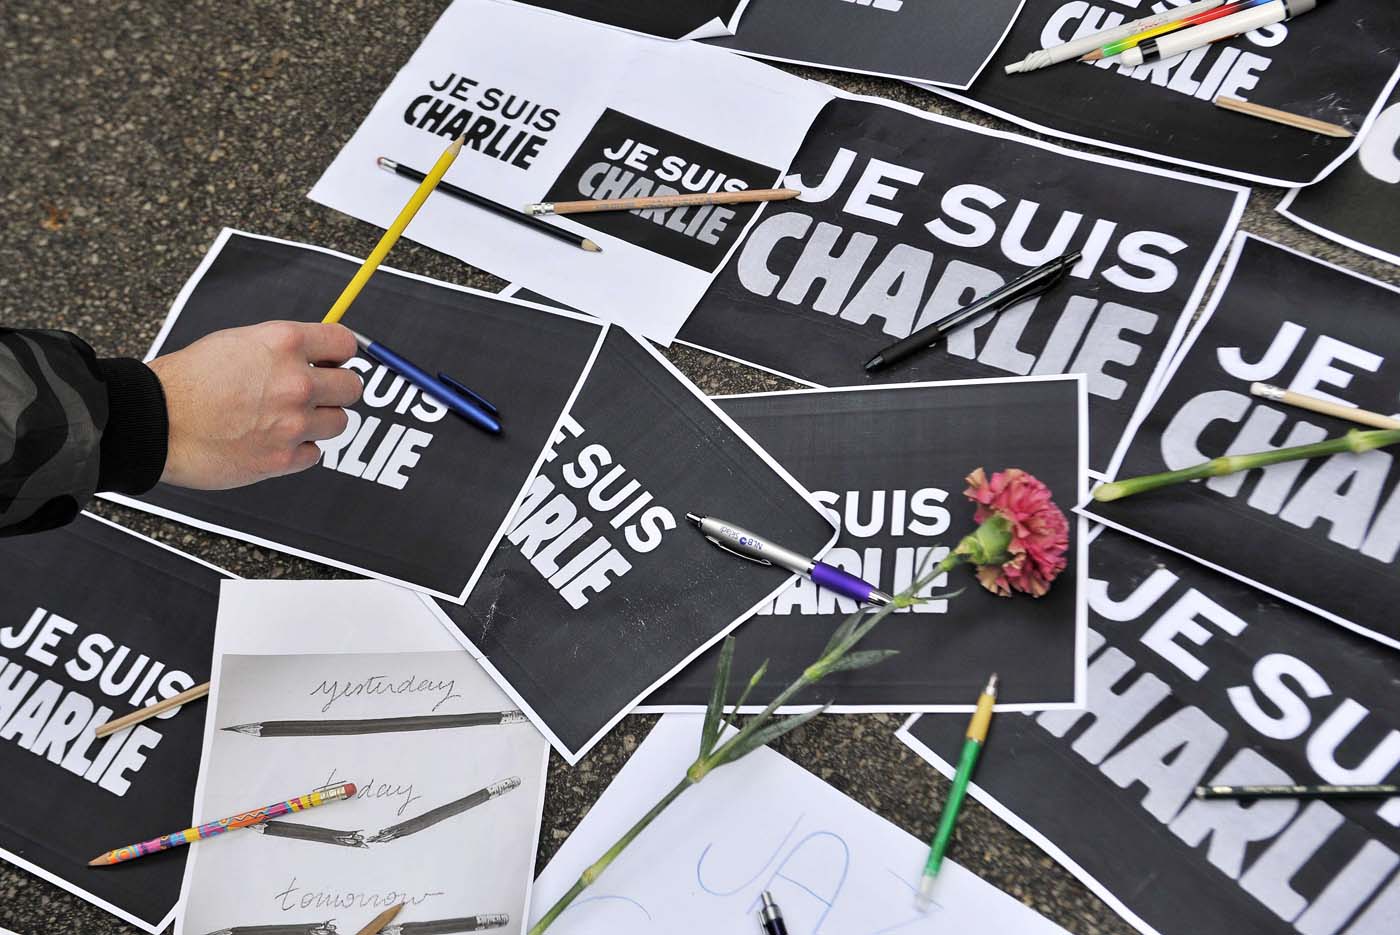 El mundo llora a las víctimas del ataque a Charlie Hebdo (Fotos)